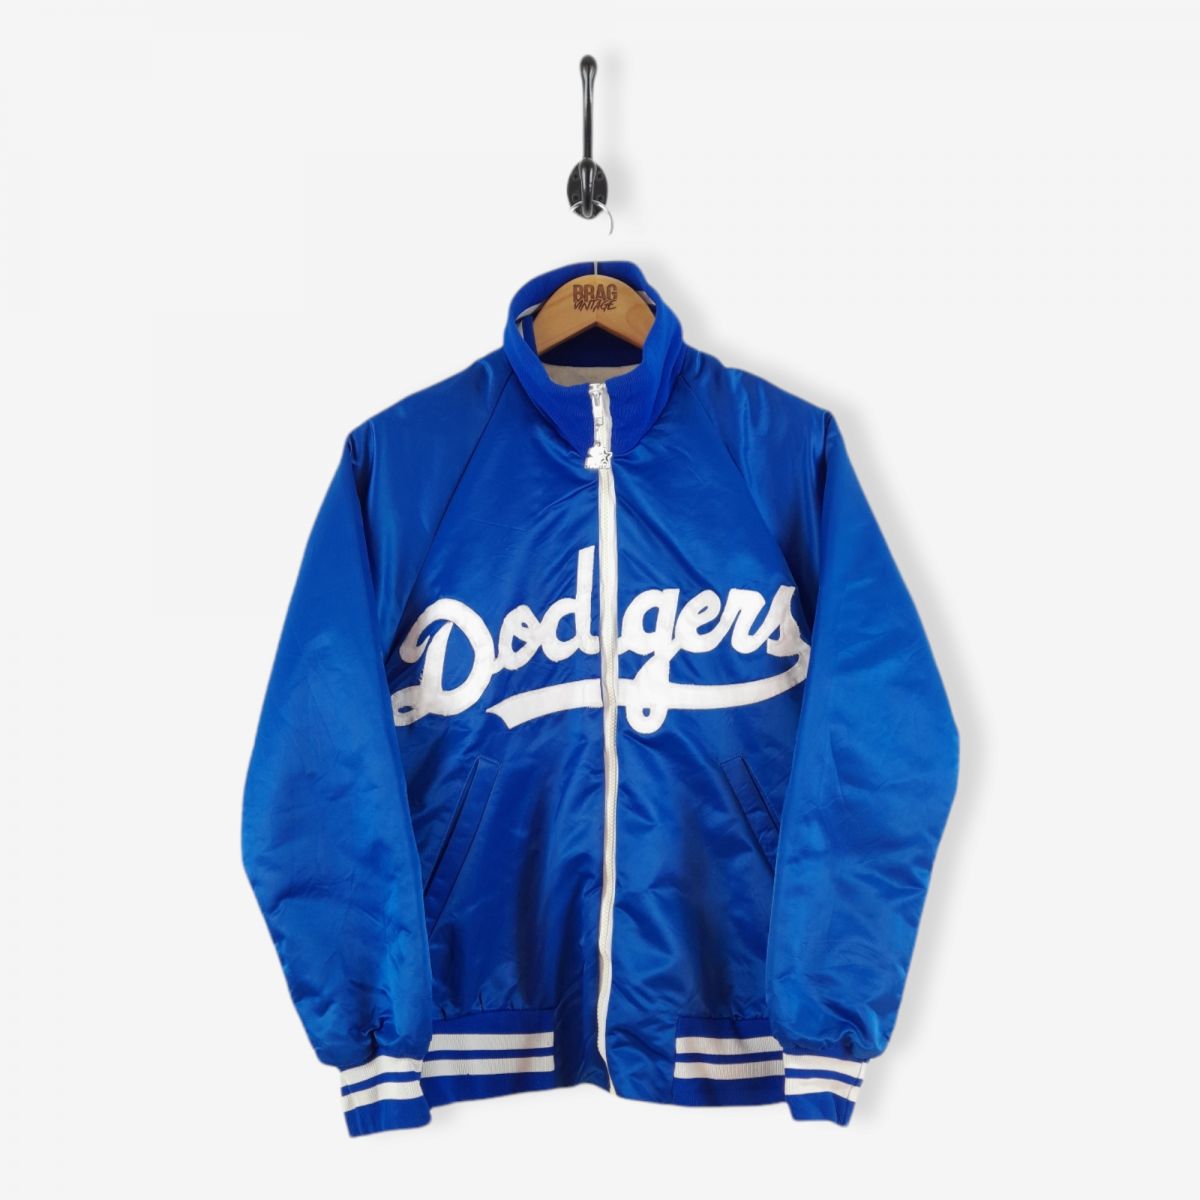 Vintage Starter Los Angeles Dodgers Baseball Jacket Royal Blue